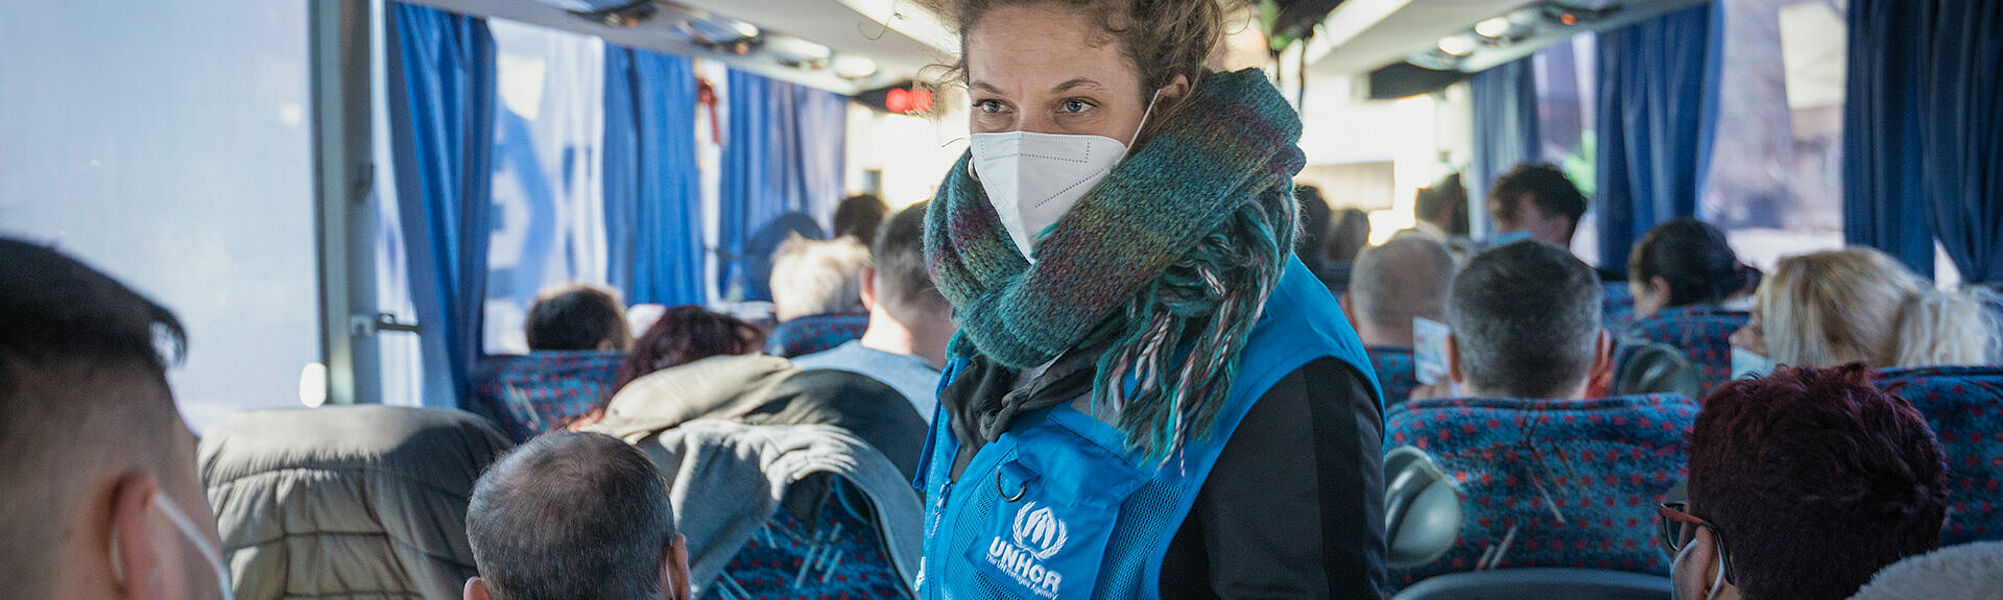 UNHCR-Helferin im Bus mit Flüchtlingen